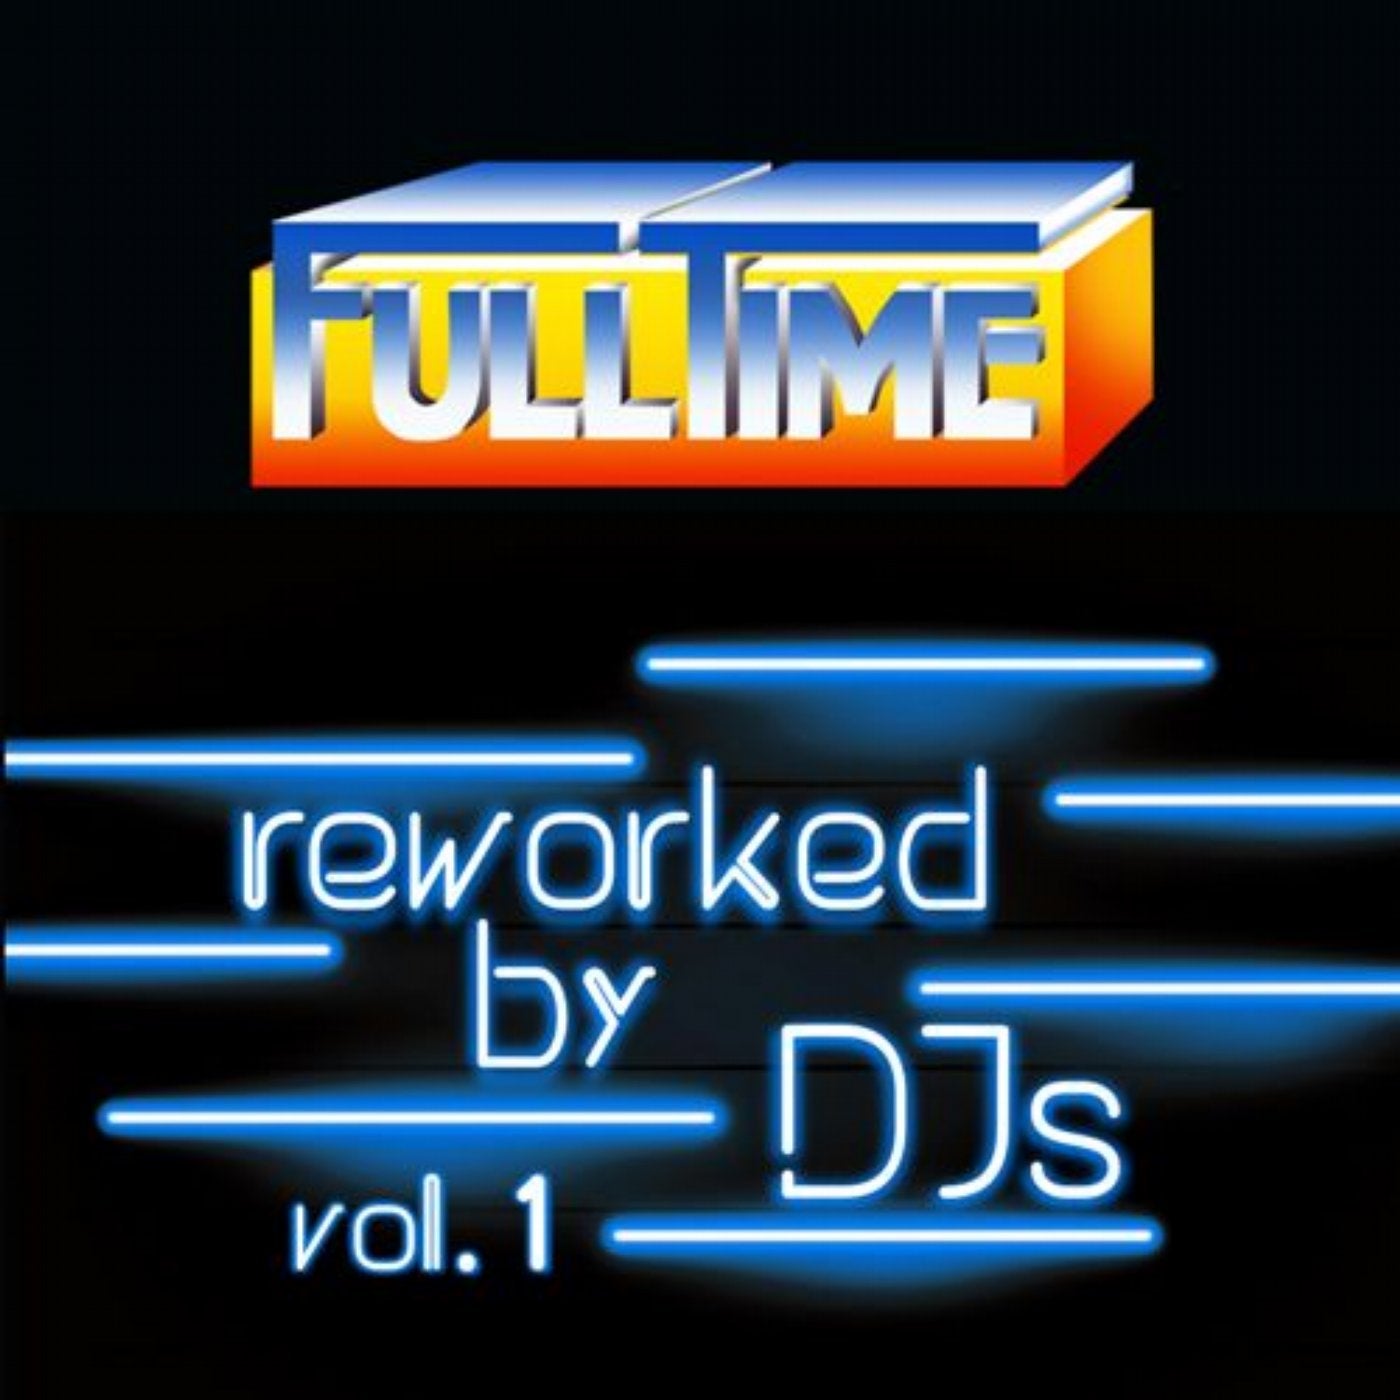 FULLTIME Reworked By DJs Vol. 1